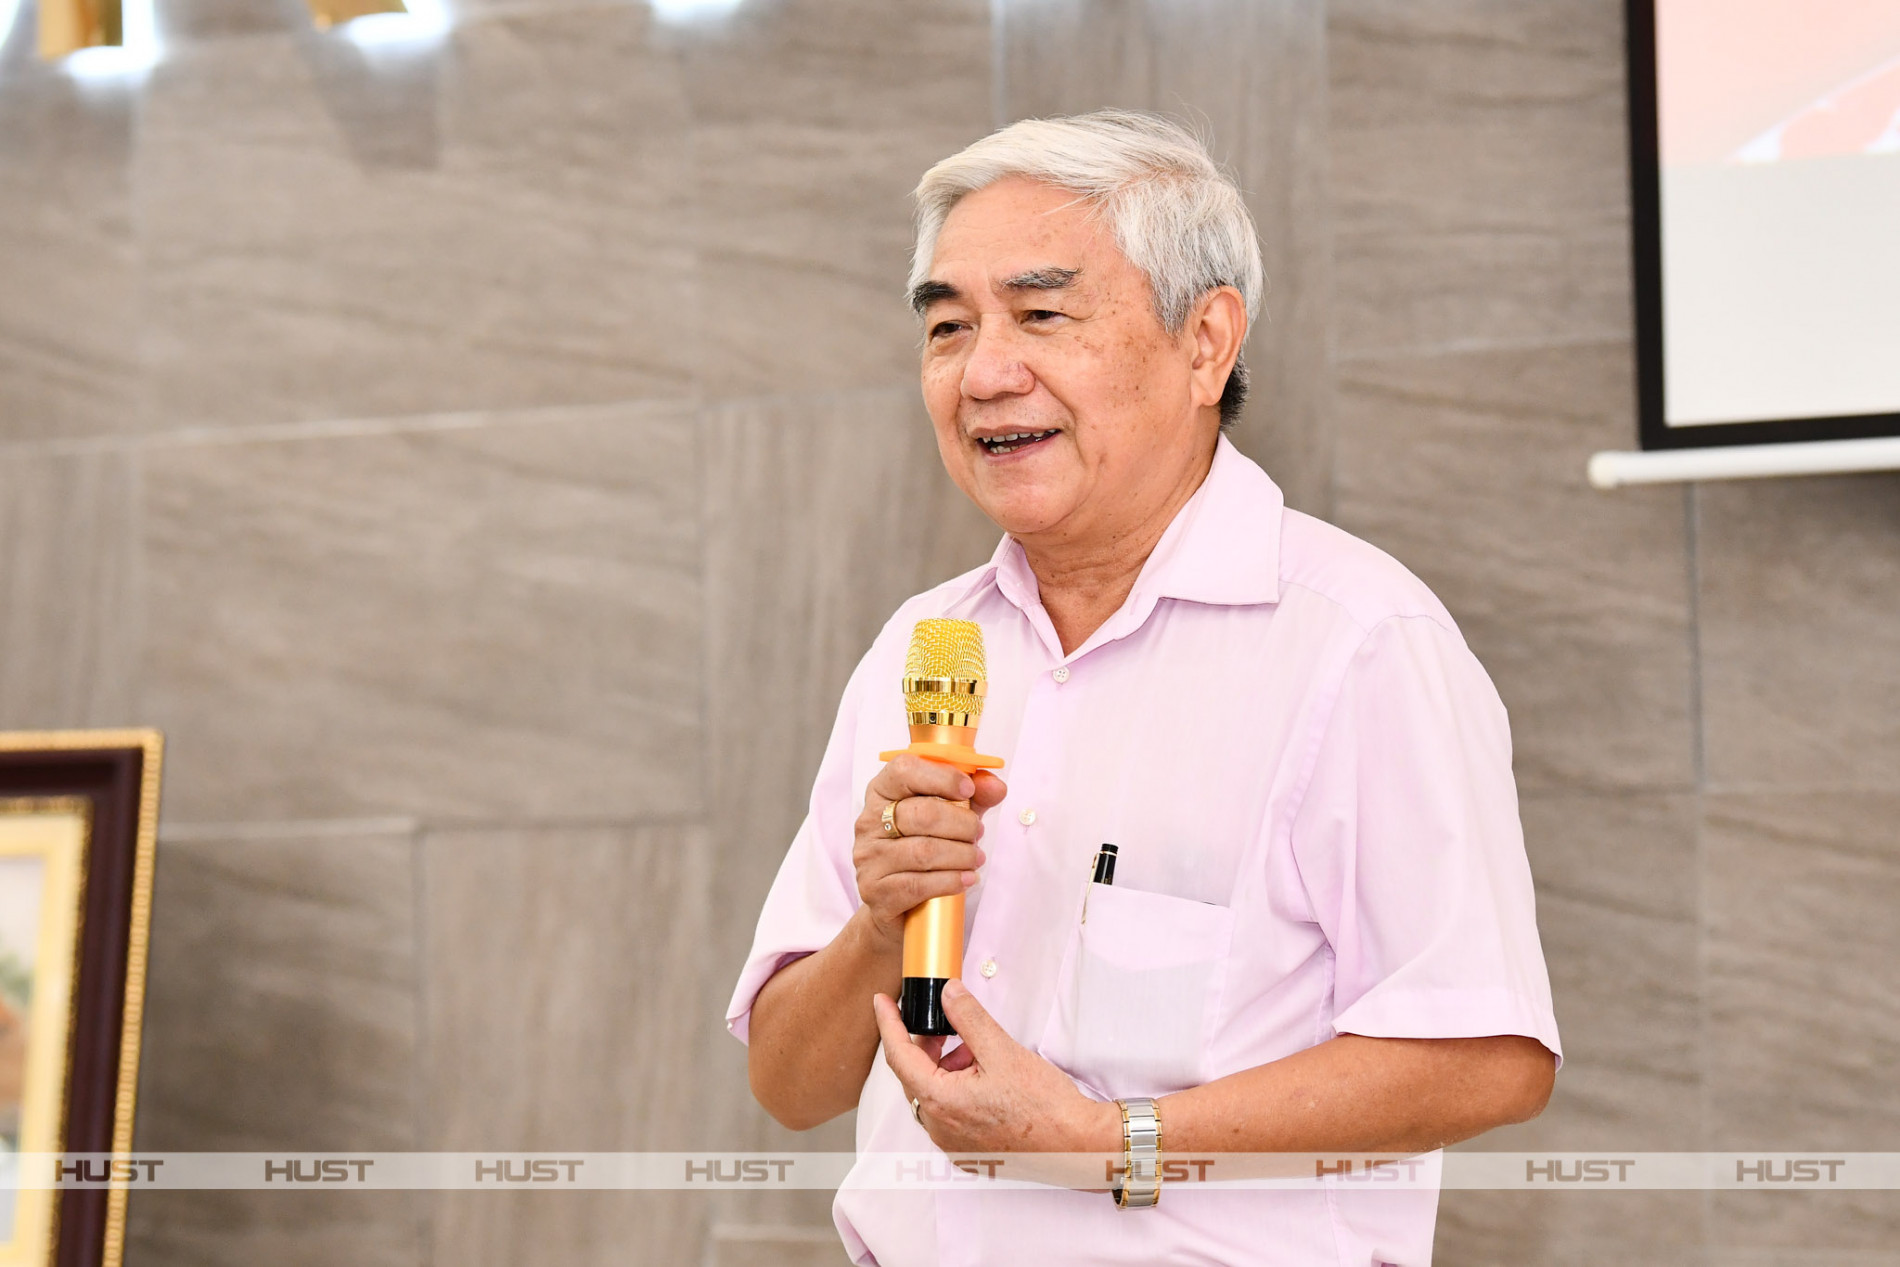 TS. Nguyễn Quân, Nguyên Bộ trưởng Bộ Khoa học Công nghệ, Chủ tịch Mạng lưới CSV ĐH Bách khoa Hà Nội